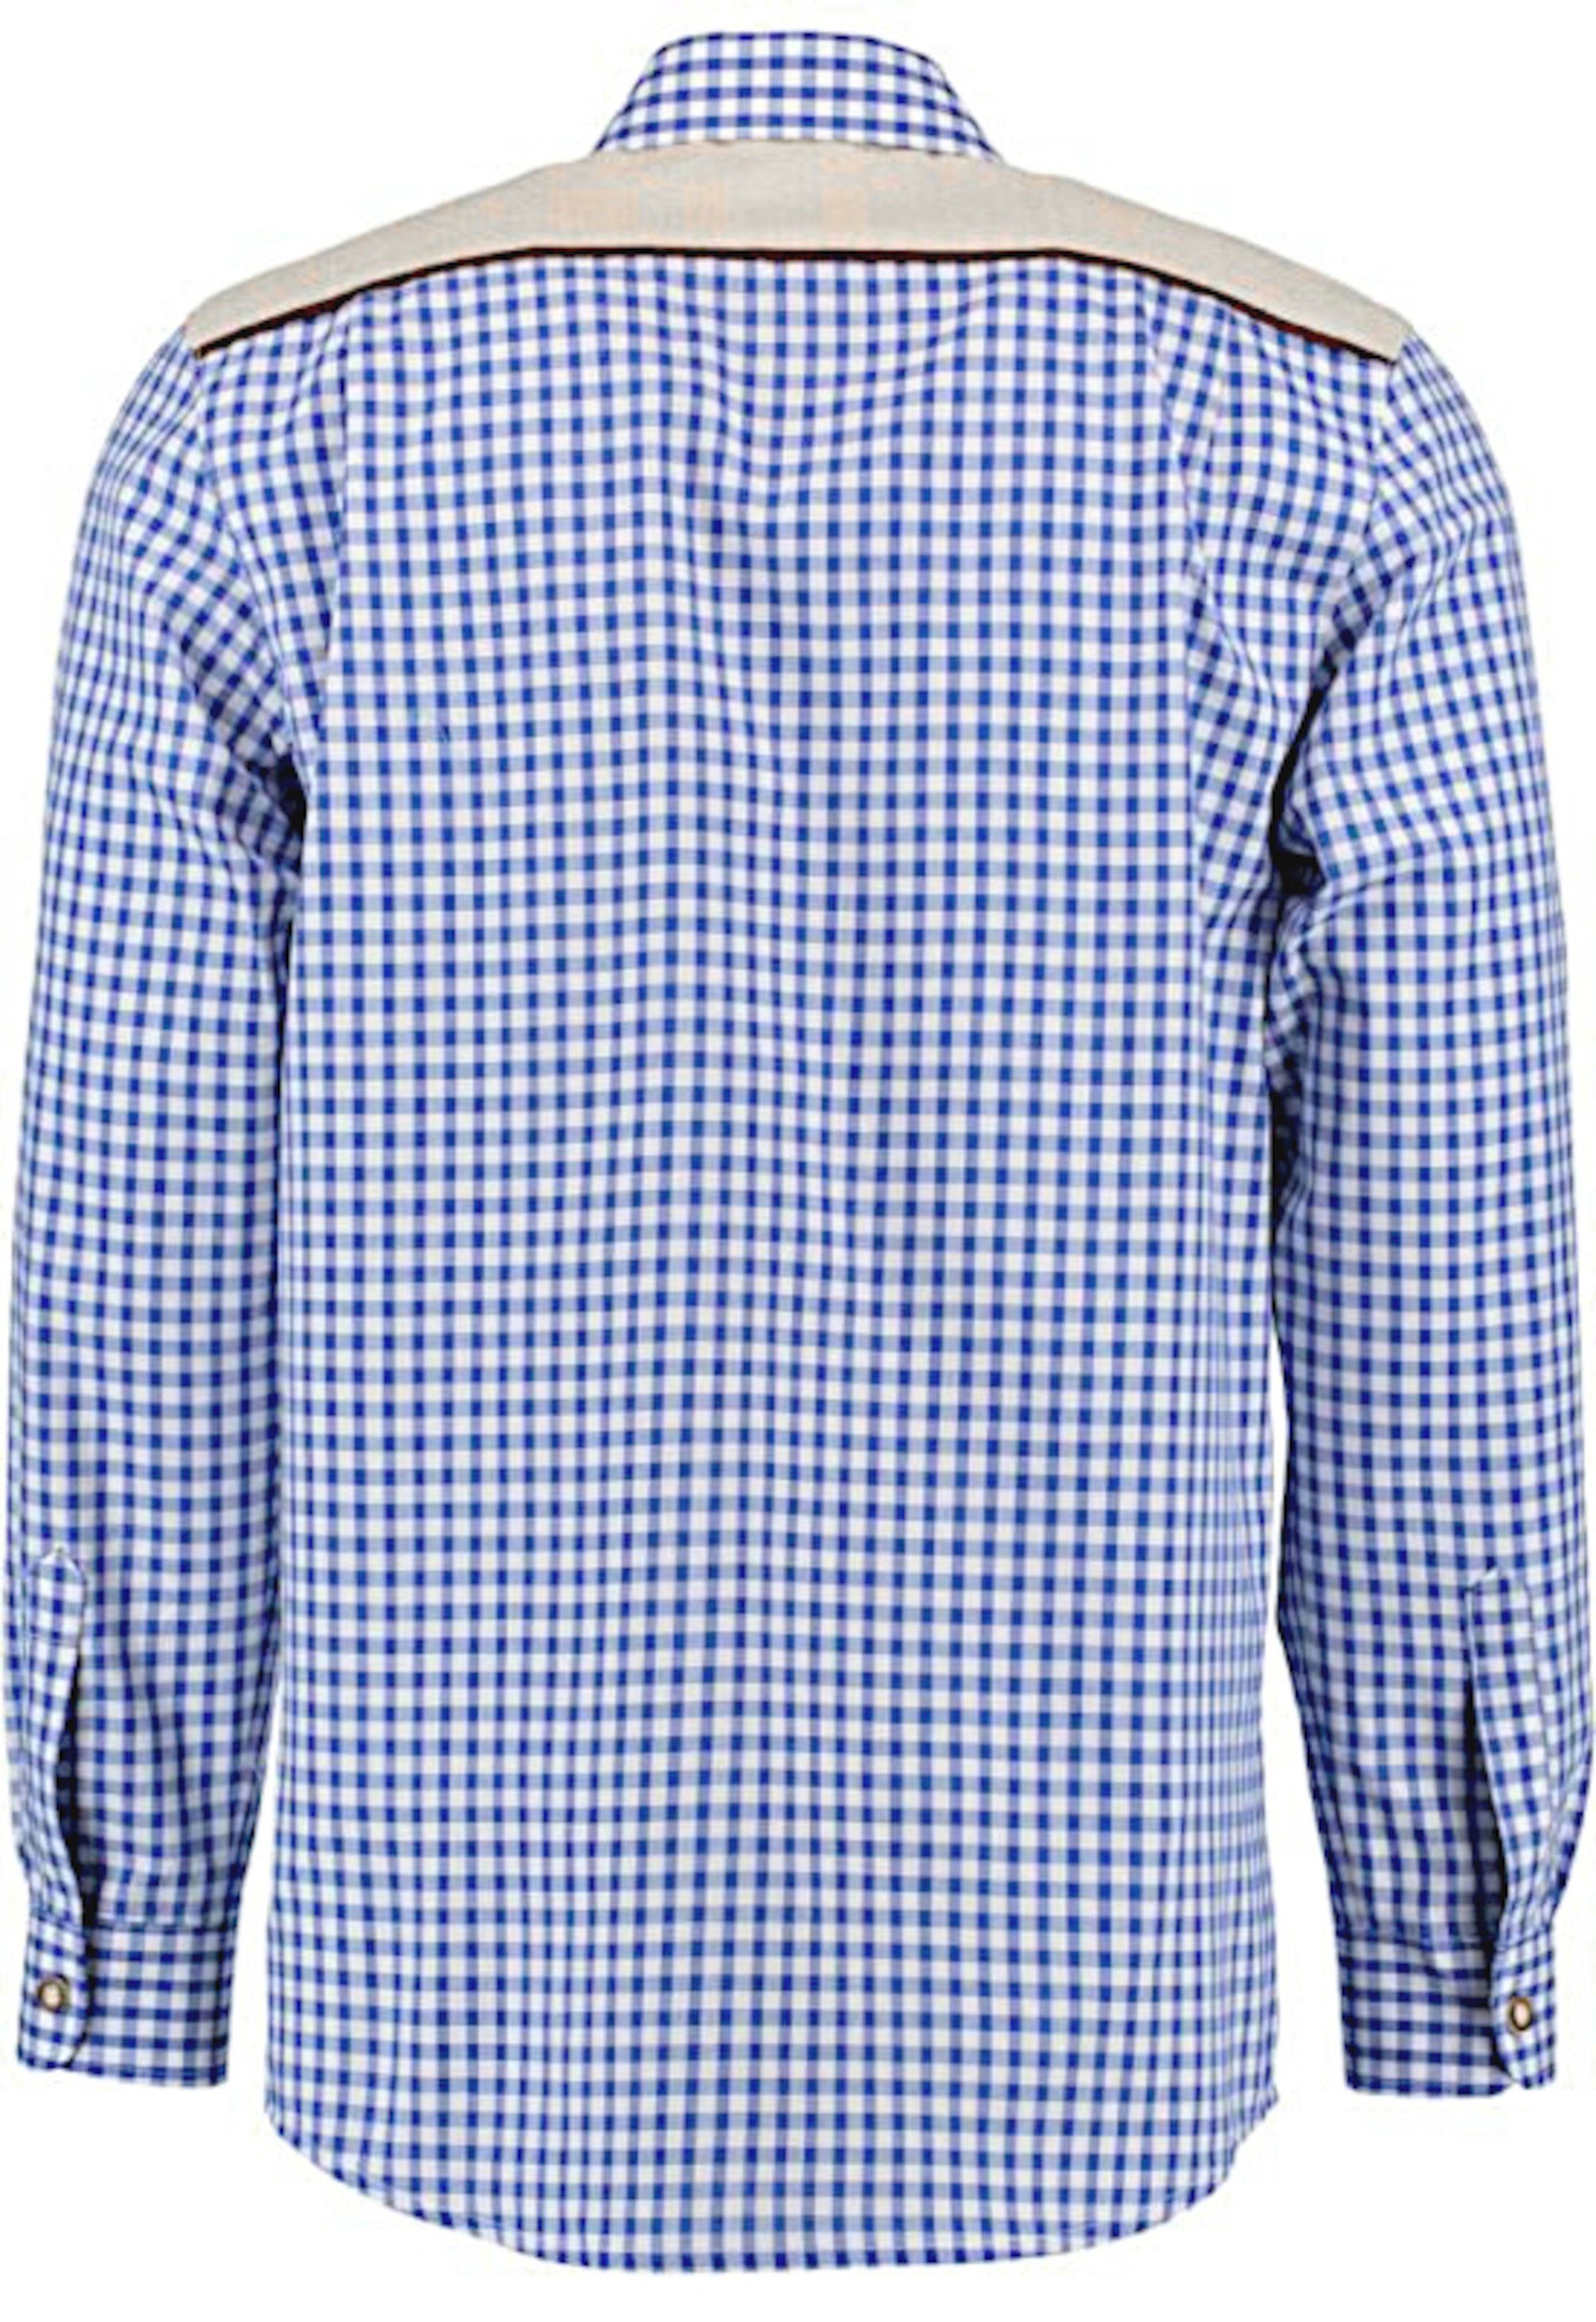 Stickerei orbis TH-0215 Regular Trachtenhemd Krempelarm gerader Kentkragen, blau-weiß Fit-bequemer Schnitt